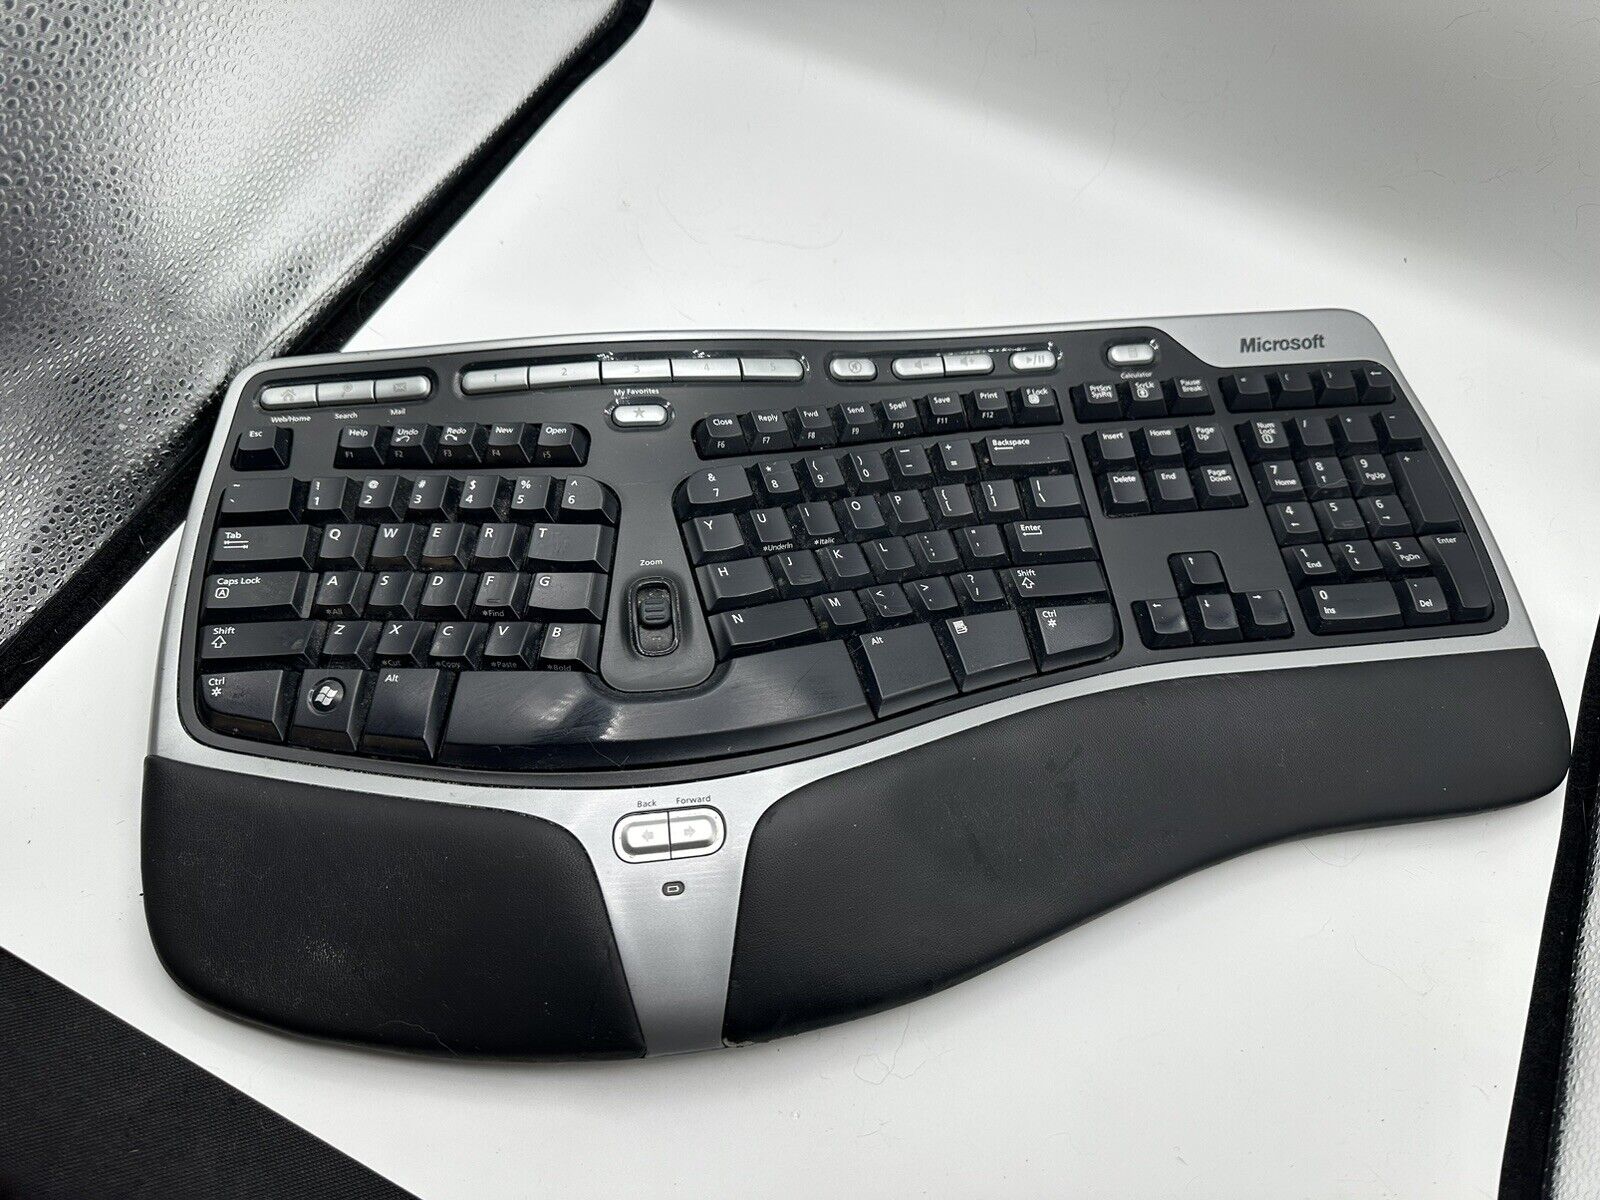 Microsoft Natural Wireless Ergonomic Keyboard 7000 No USB Dongle.    M